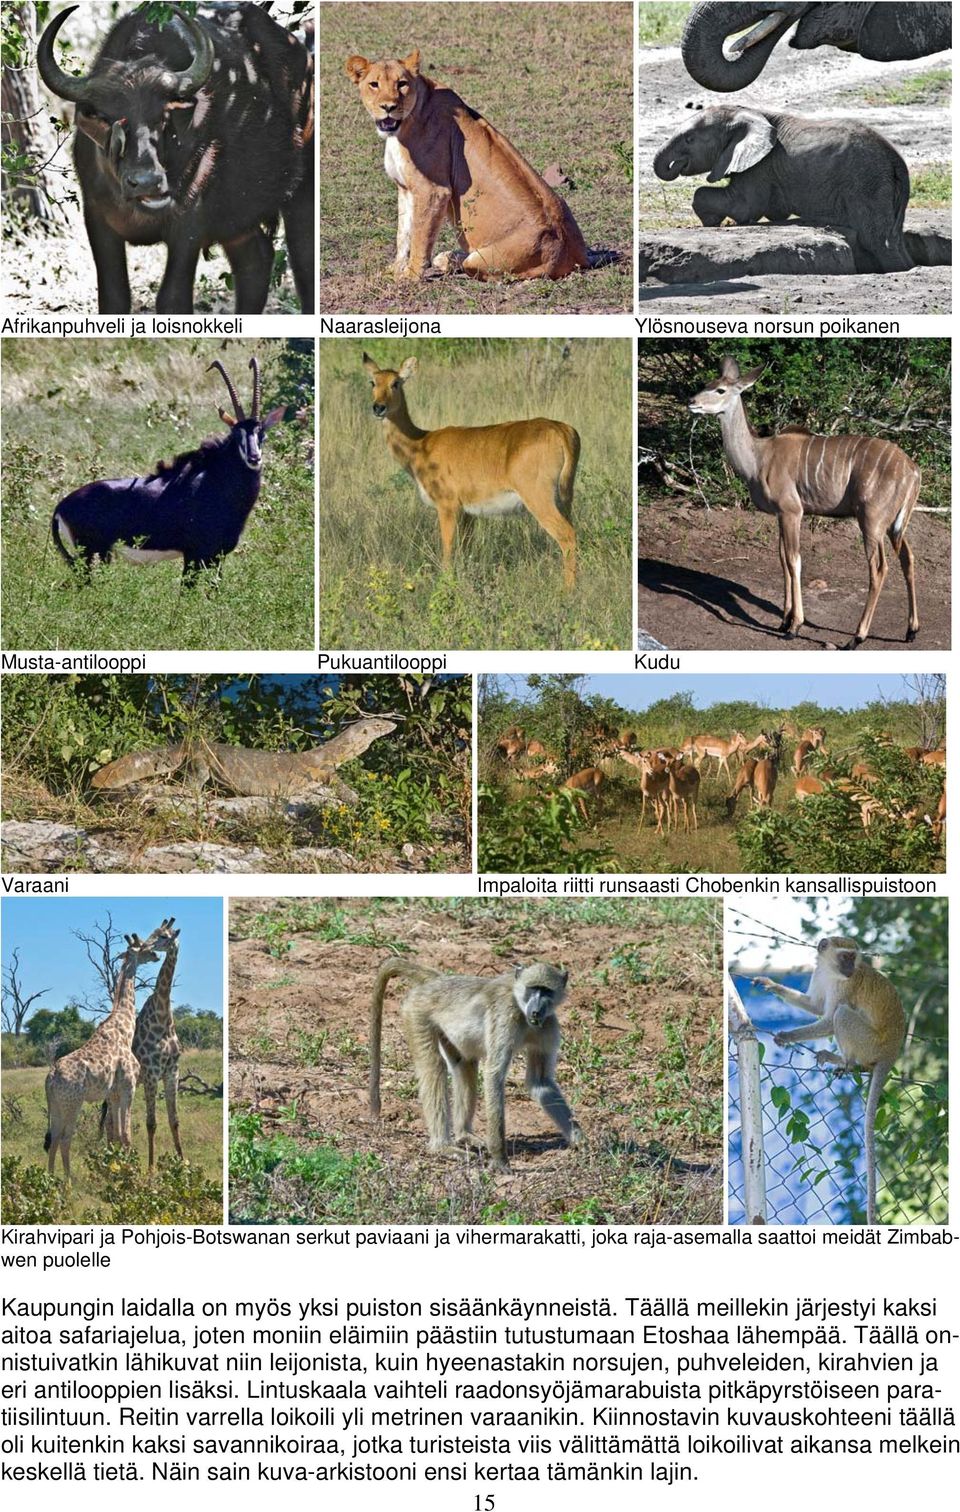 Täällä meillekin järjestyi kaksi aitoa safariajelua, joten moniin eläimiin päästiin tutustumaan Etoshaa lähempää.